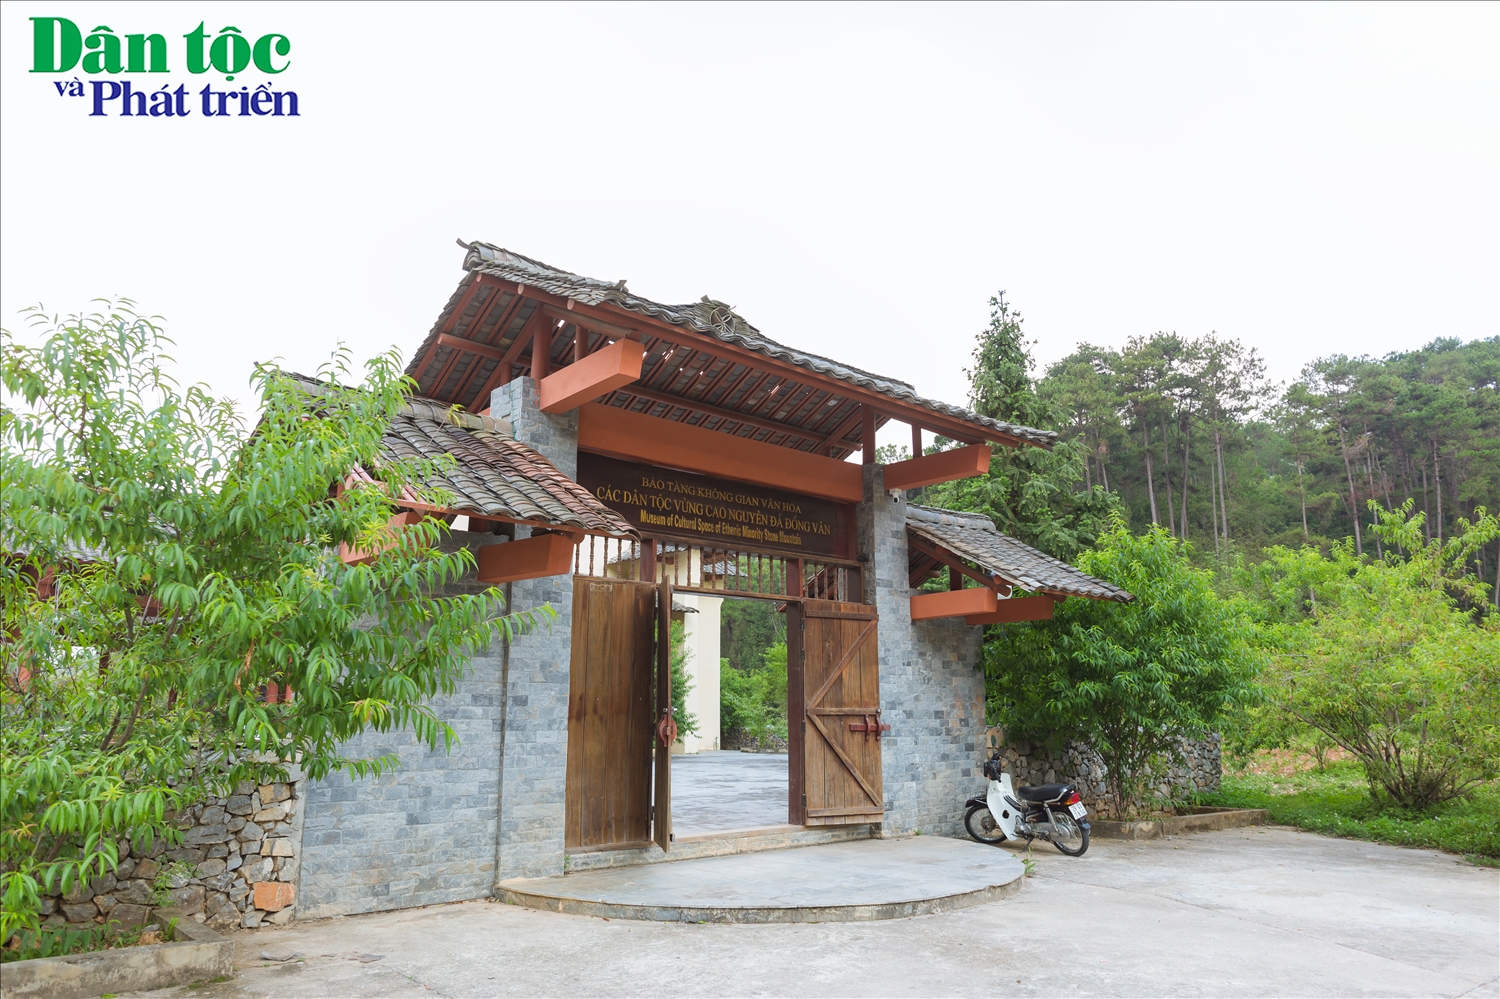 Bảo tàng không gian văn hóa các dân tộc vùng cao nguyên đá Đồng Văn có địa chỉ tại thị trấn Đồng Văn, huyện Đồng Văn, tỉnh Hà Giang.